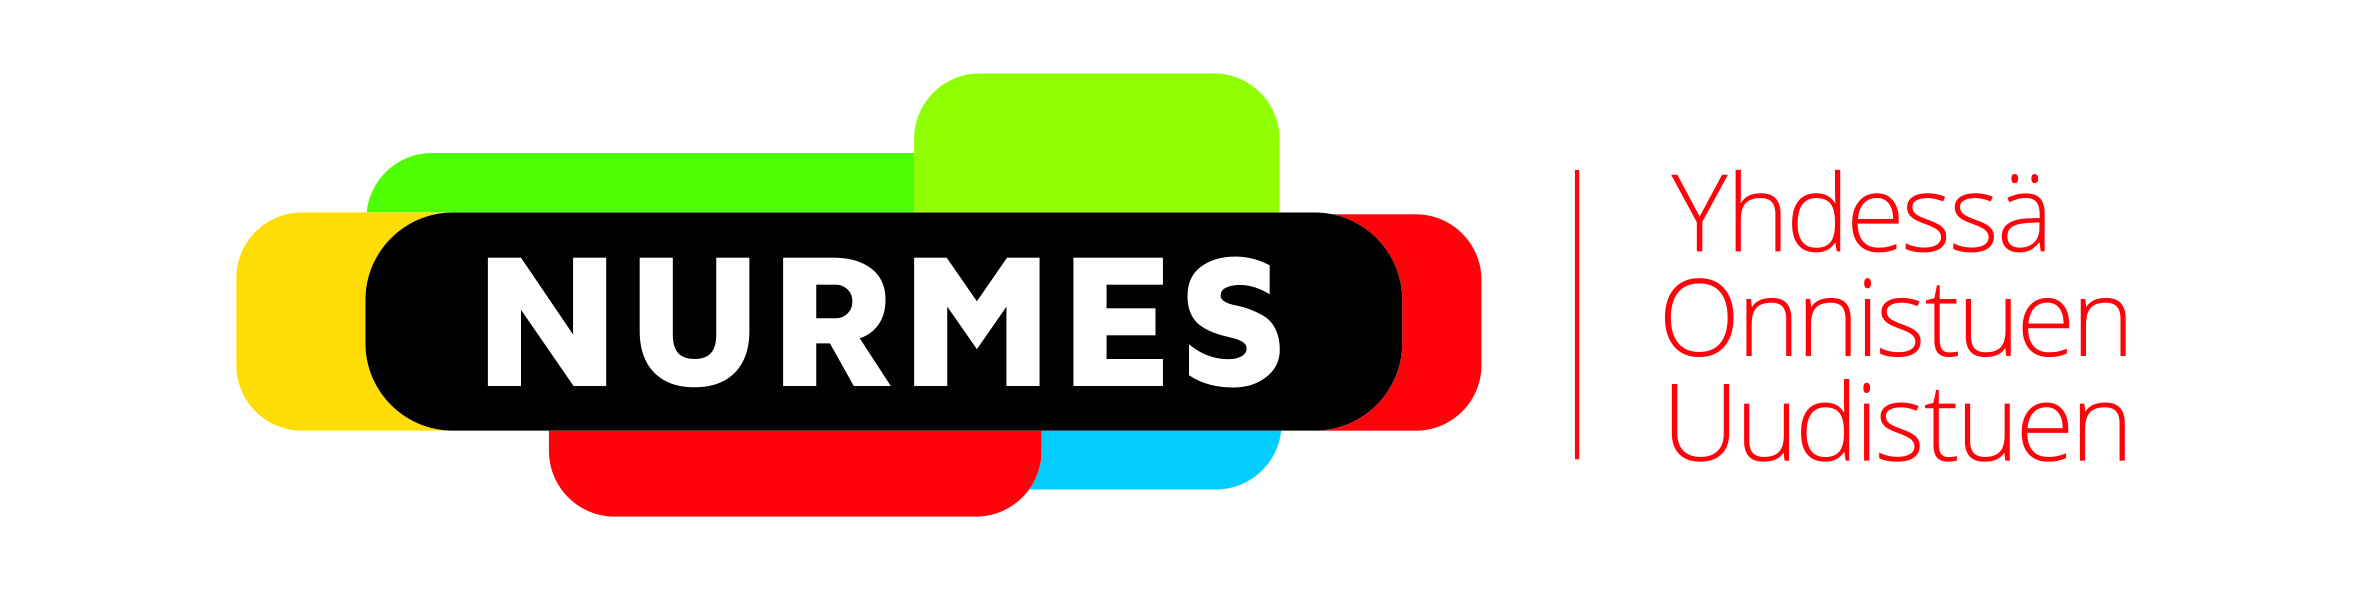 Nurmes-logo, Yhdessä Onnistuen Uudistuen